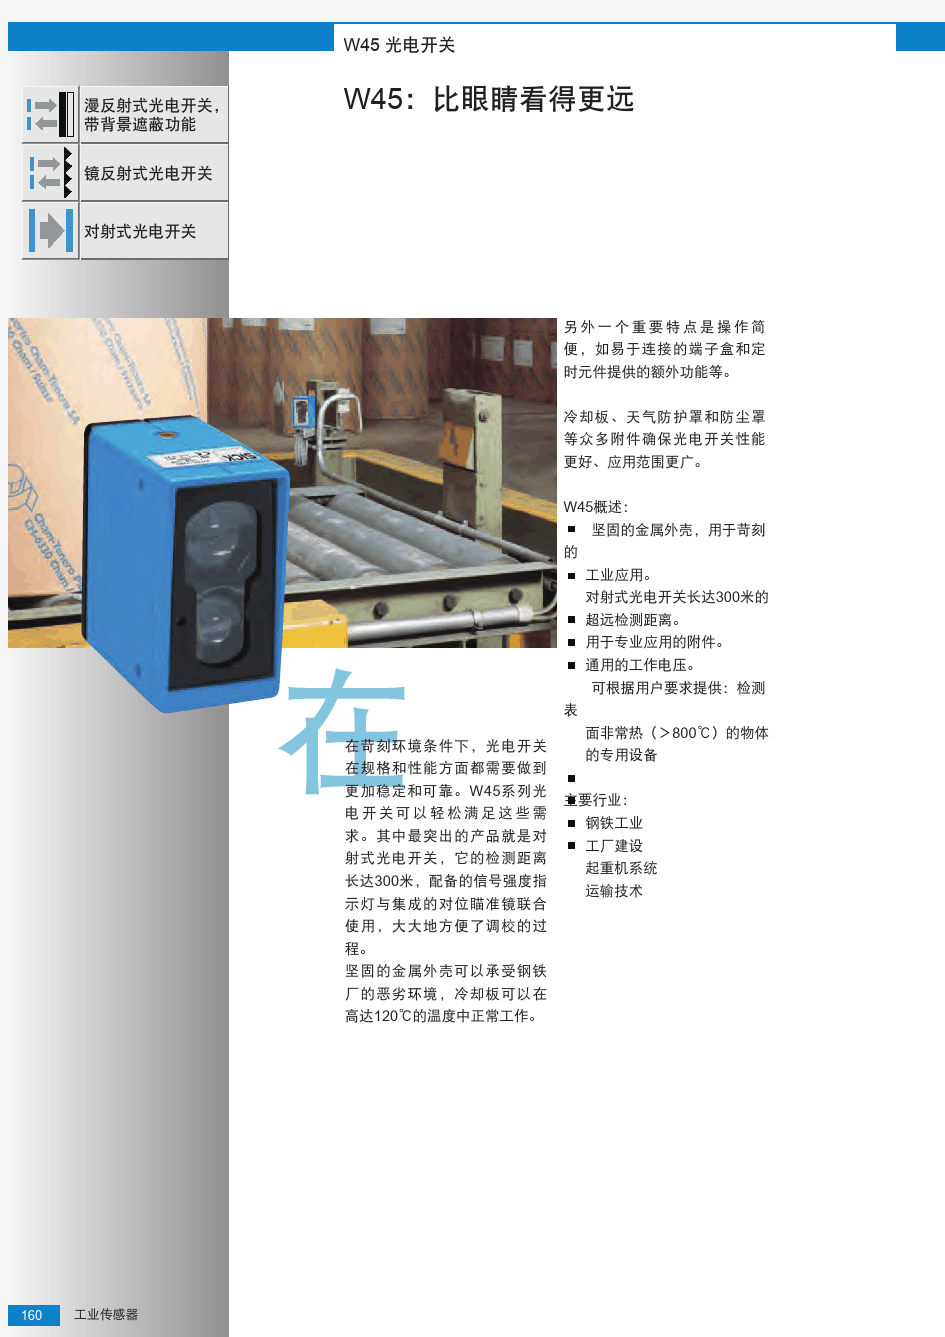 W45紧凑型光电开关选型手册(中文版)